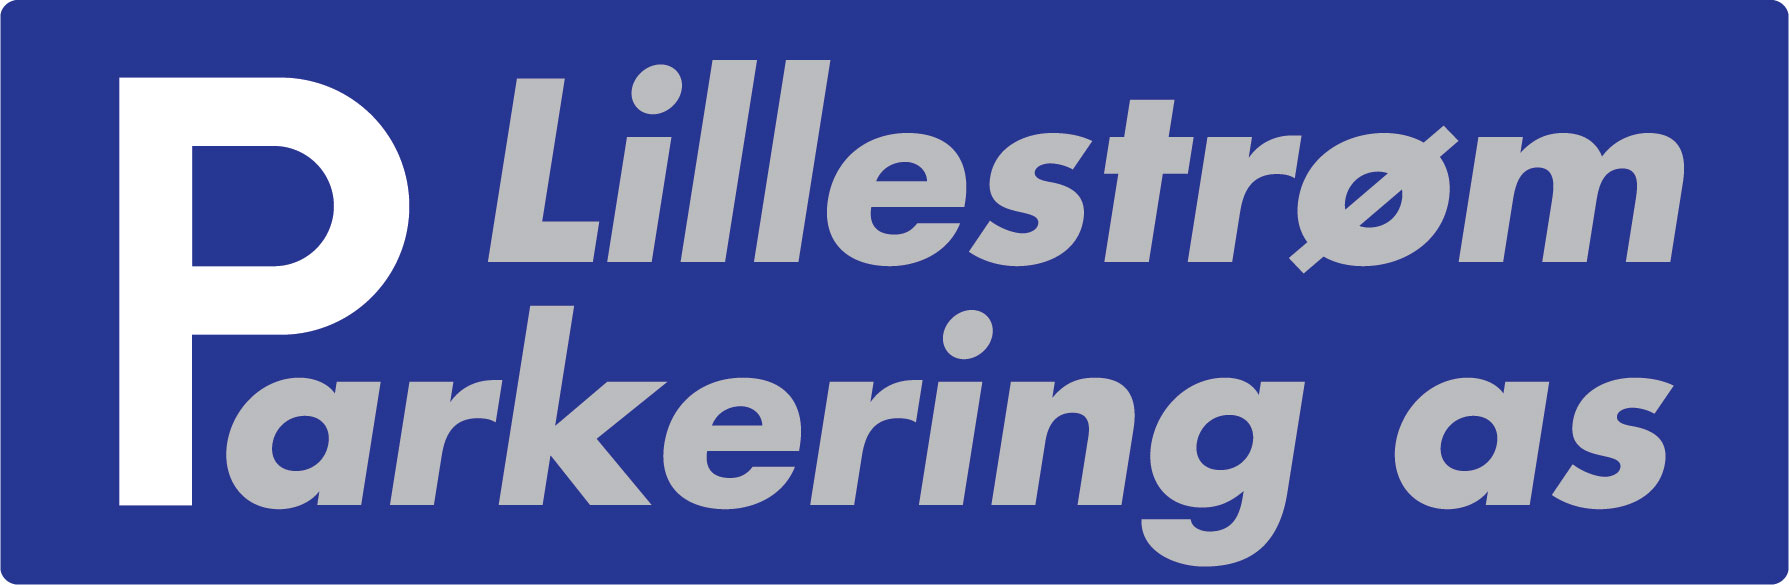 Skedsmo parkering bytter navn til Lillestrøm parkering